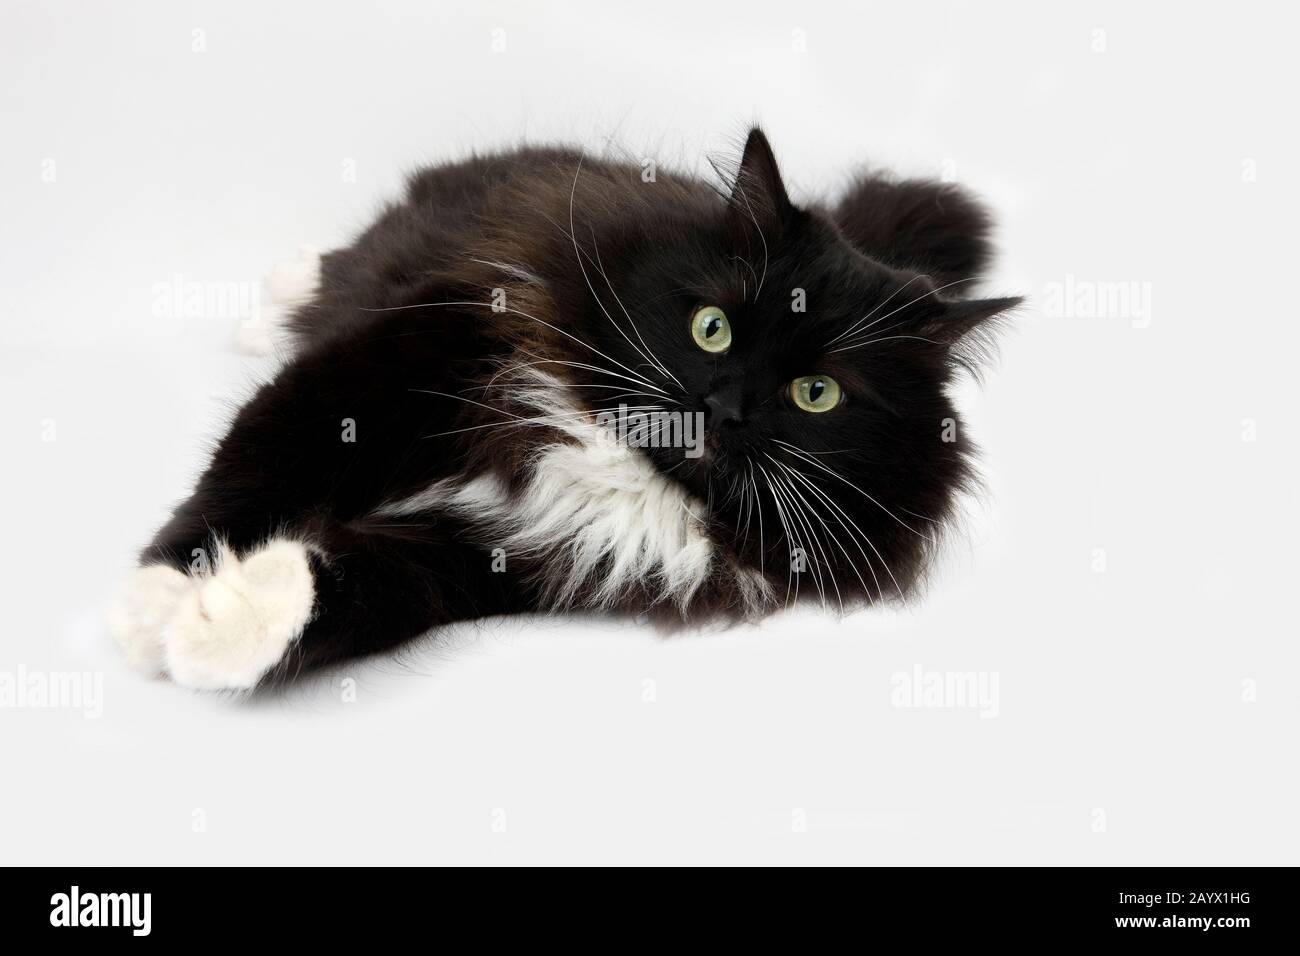 Bianco e Nero siberiano gatto domestico, femmina che stabilisce contro uno sfondo bianco Foto Stock